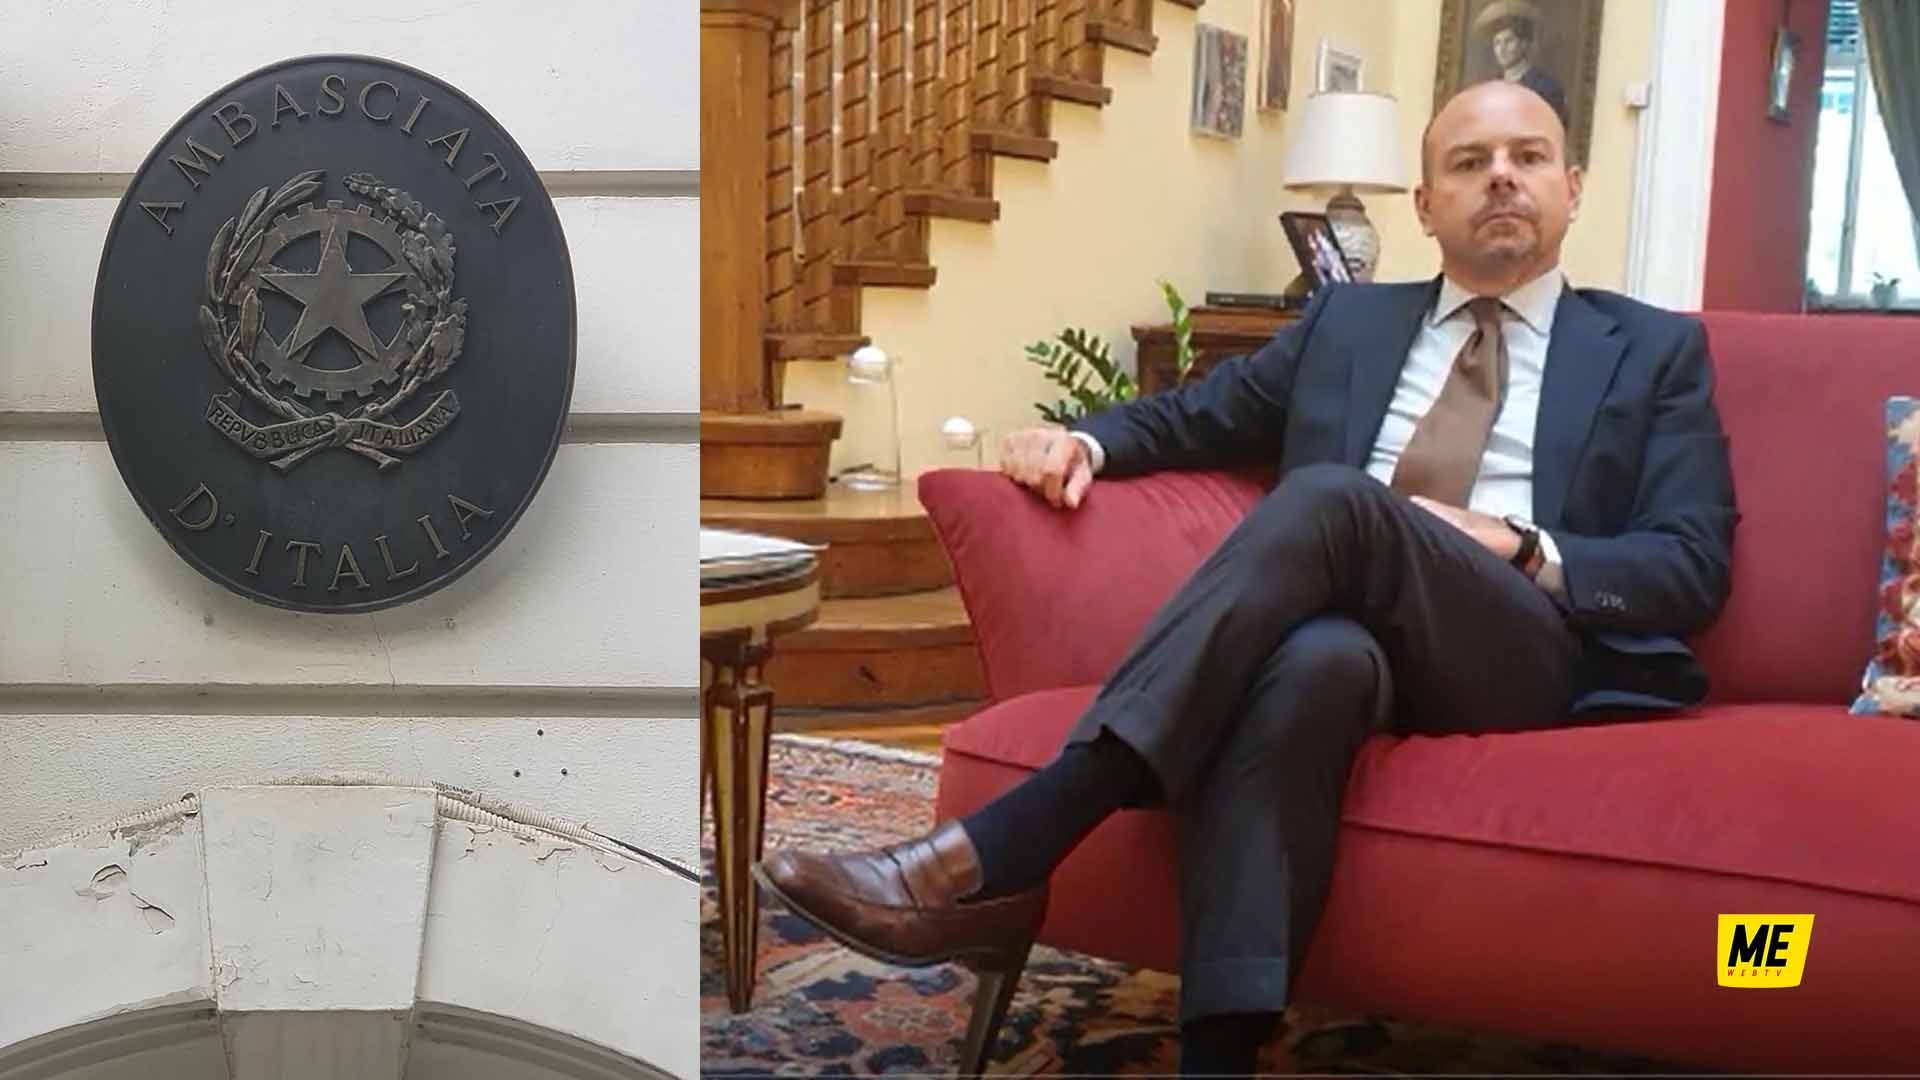 Ambasciatore in Romania_MessinaWebTv_Politica